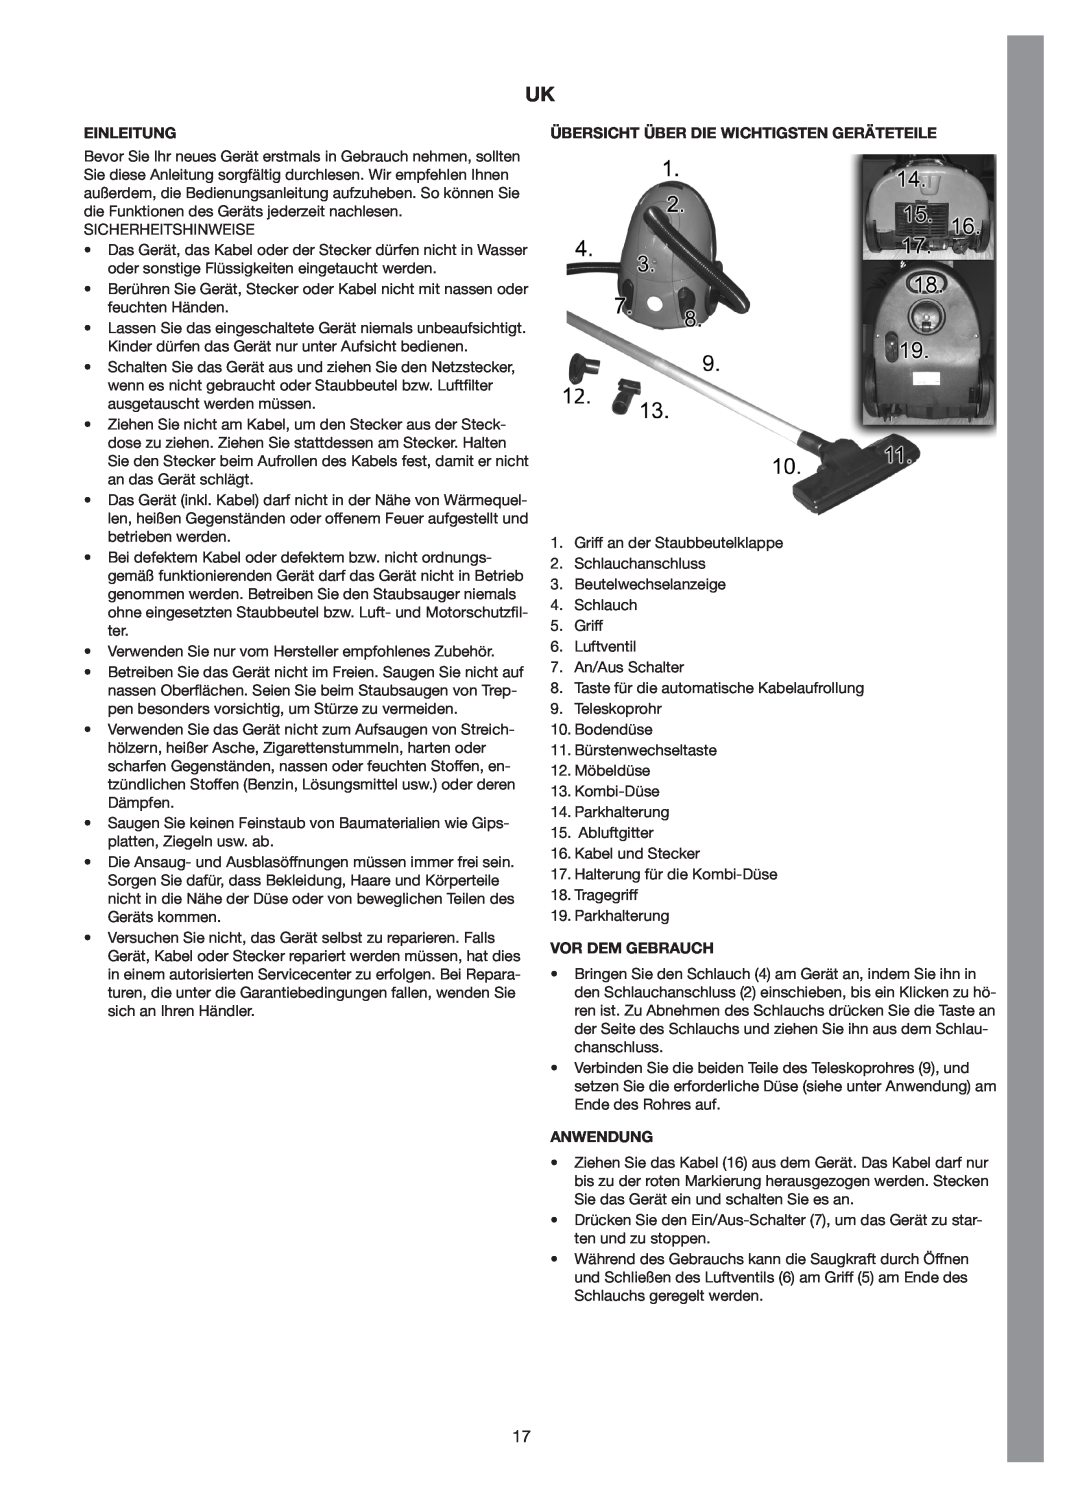 Melissa 640-131, 640-116 manual Einleitung, Übersicht Über Die Wichtigsten Geräteteile, Vor Dem Gebrauch, Anwendung 